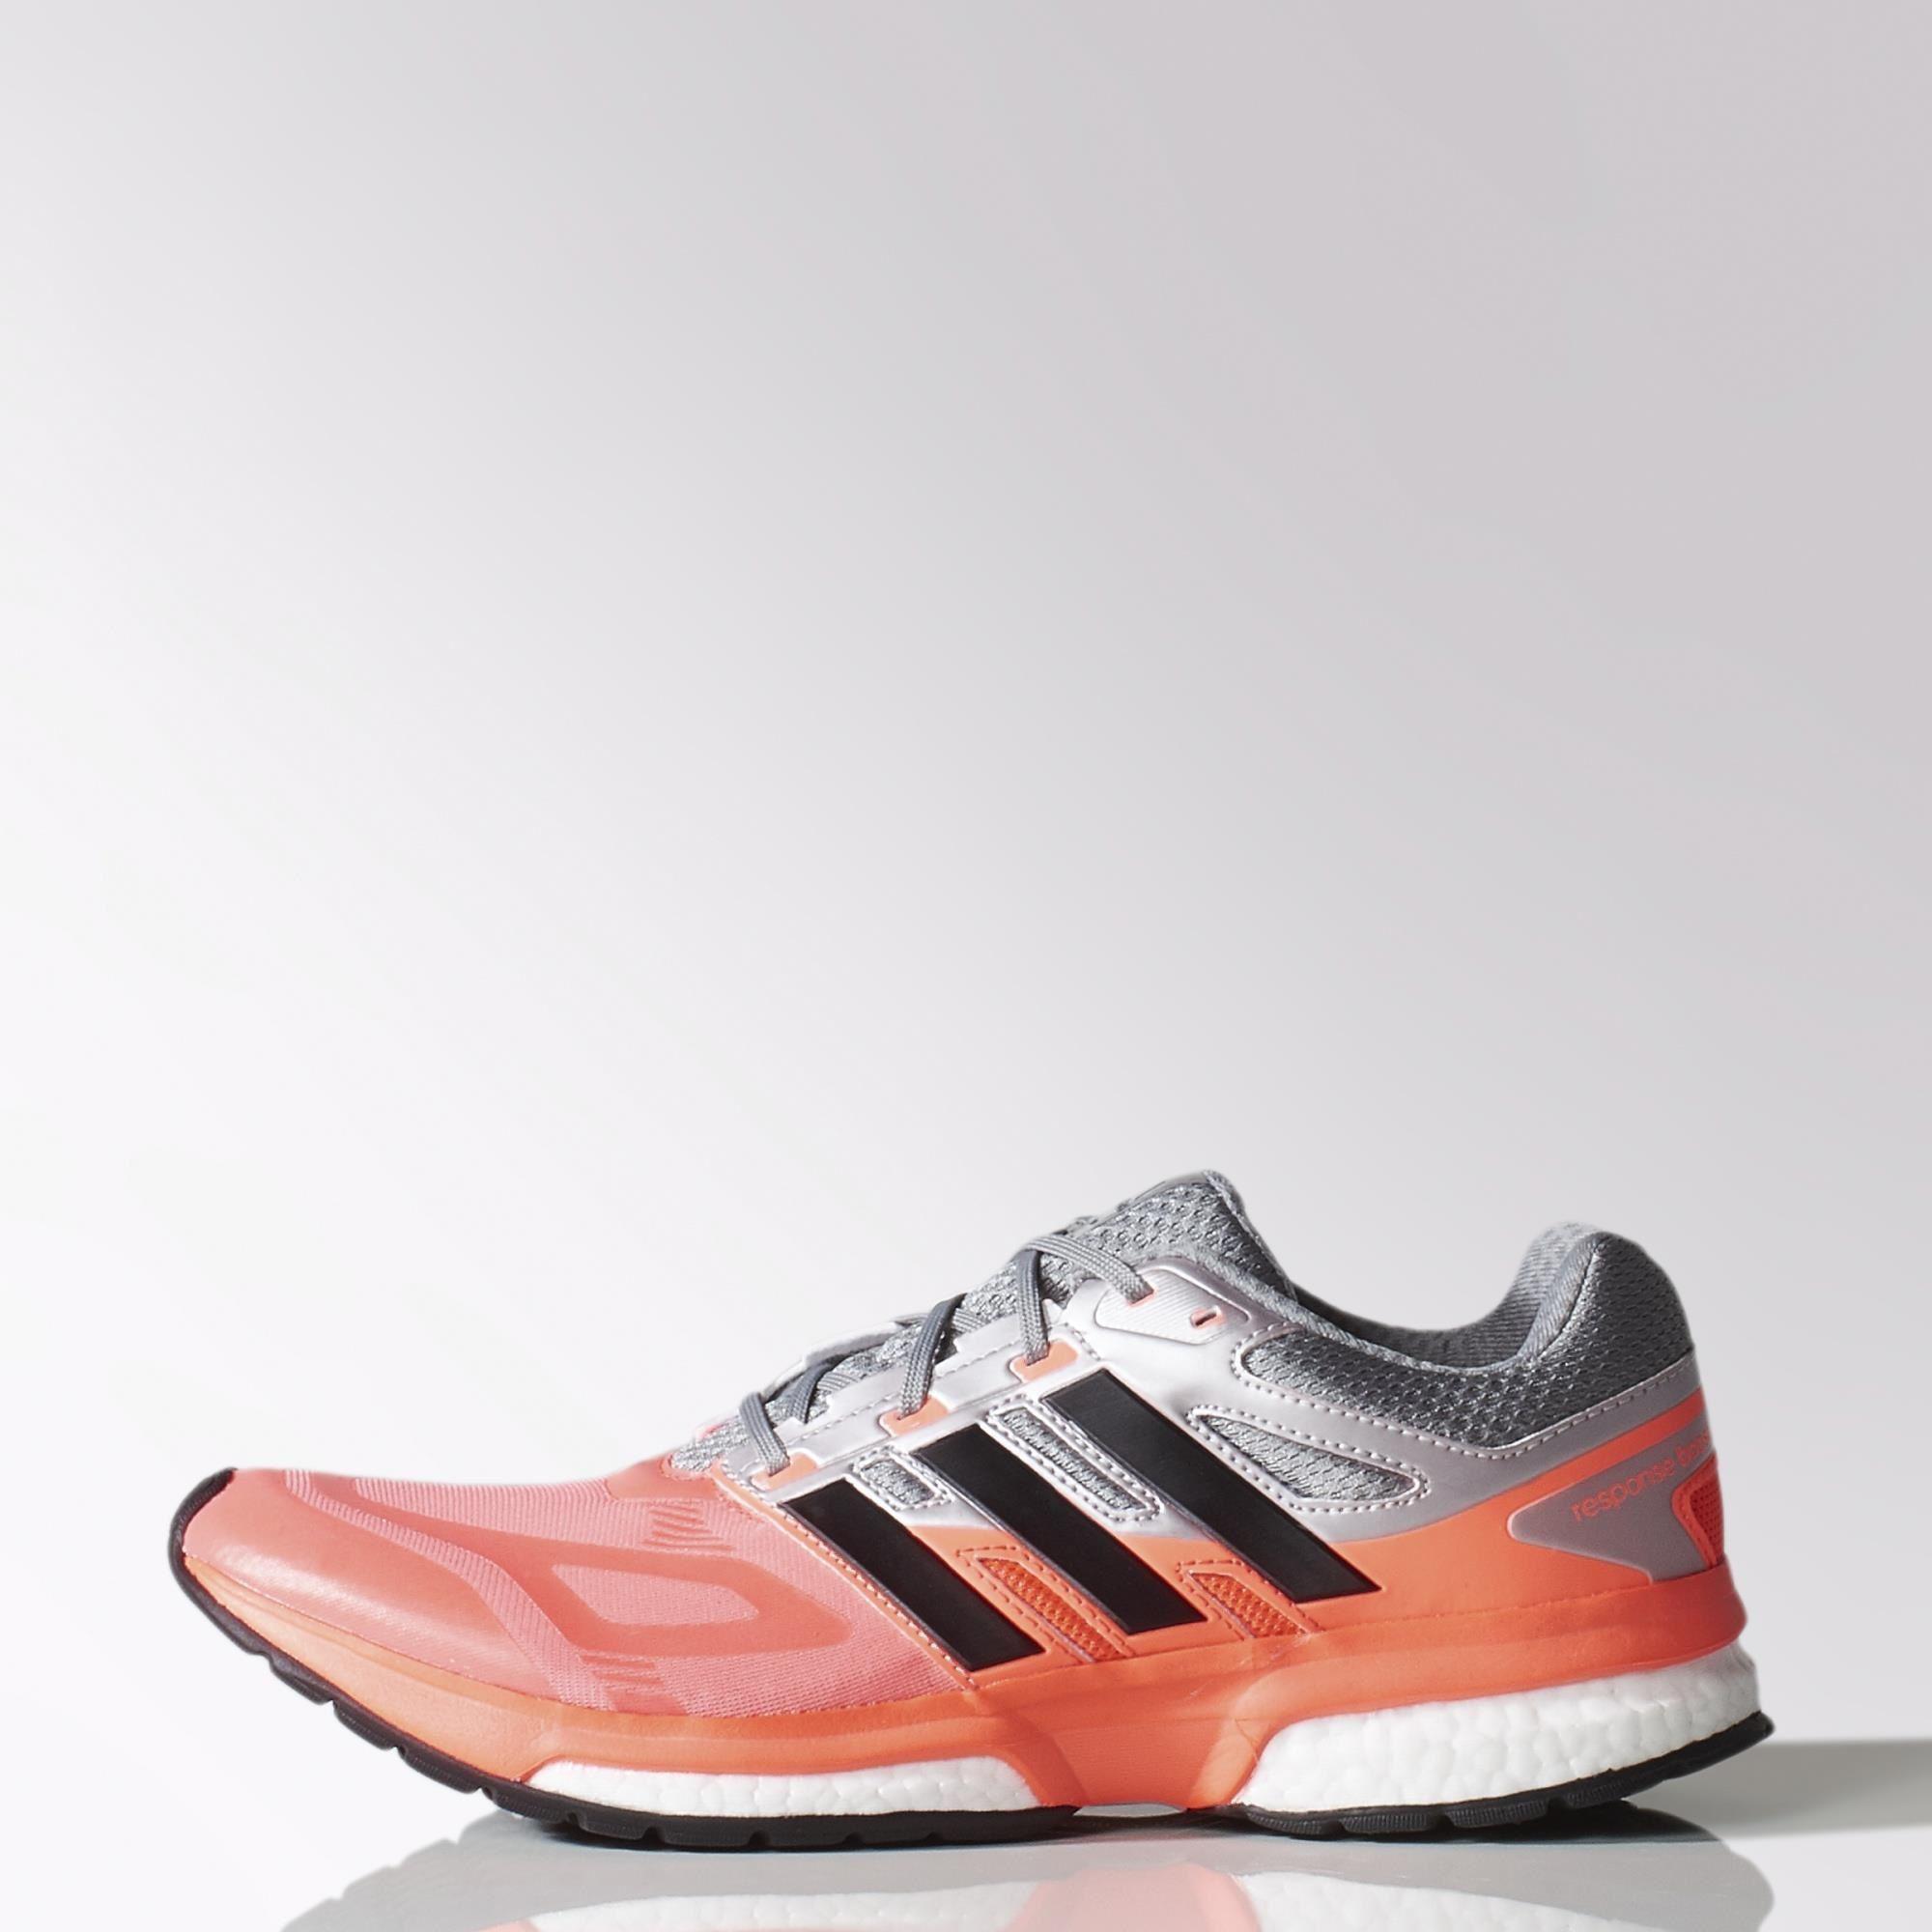 Salida ayudante Variedad Adidas Mens Response Boost Tech Running Shoes - Solar Red - Tennisnuts.com